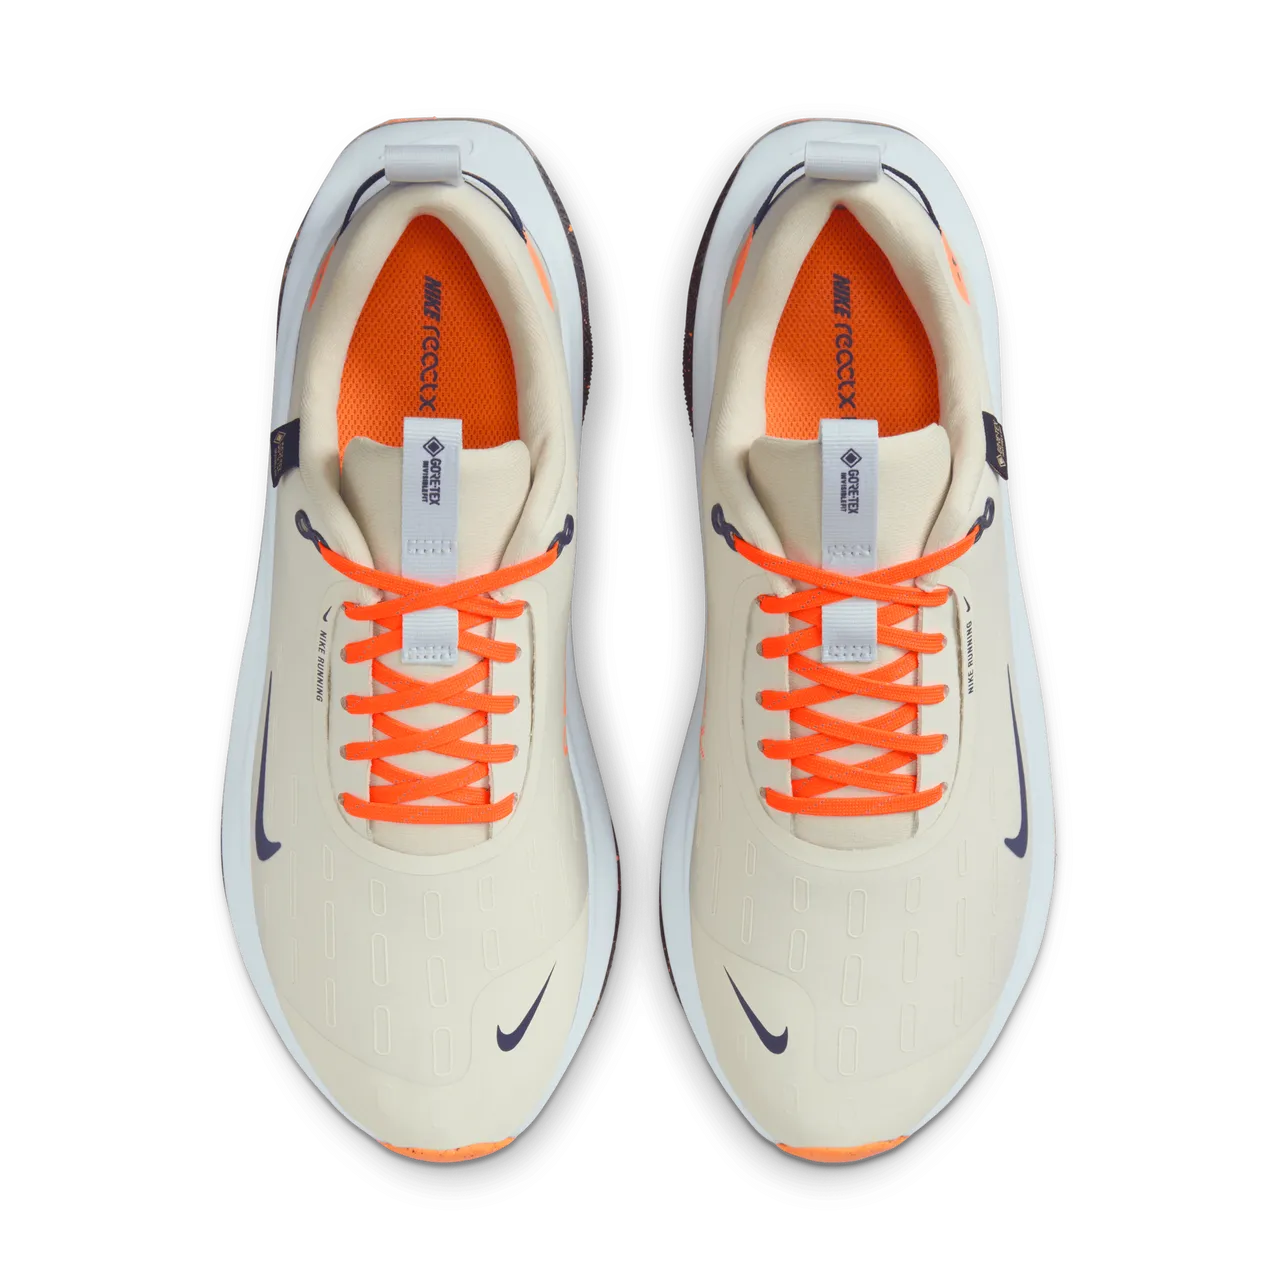 Nike InfinityRN 4 GORE-TEX Men's Waterproof Road Running Shoes - Green